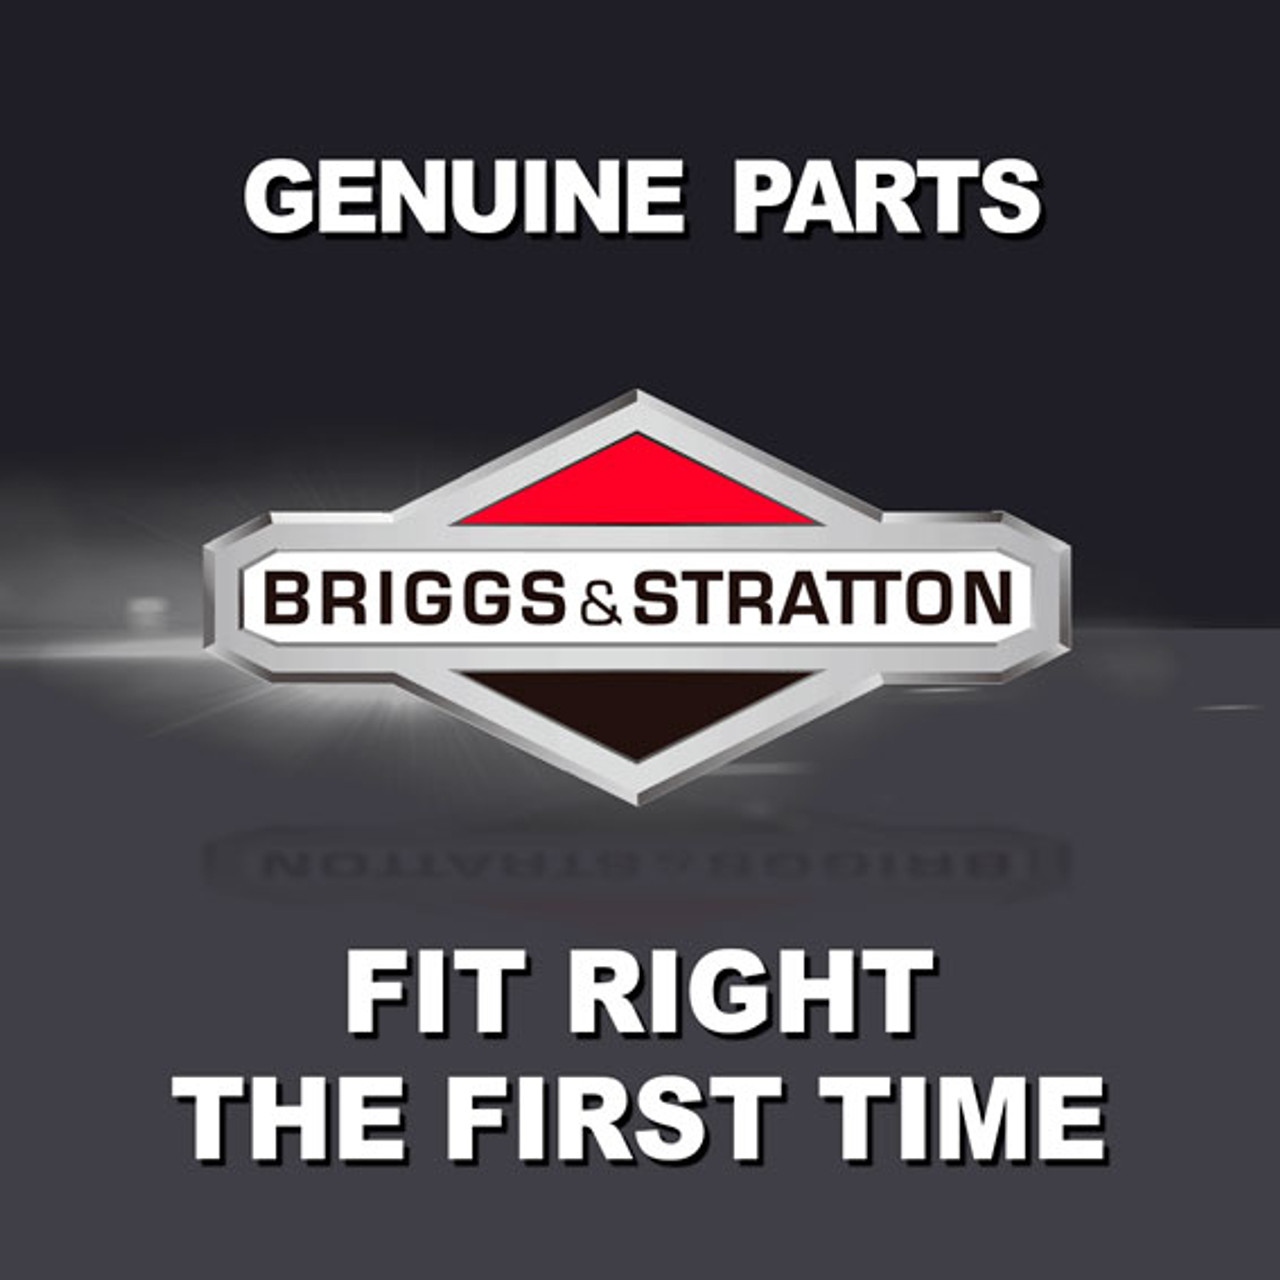 BRIGGS & STRATTON SUPPORT-LEG 189522ZGS - Image 1